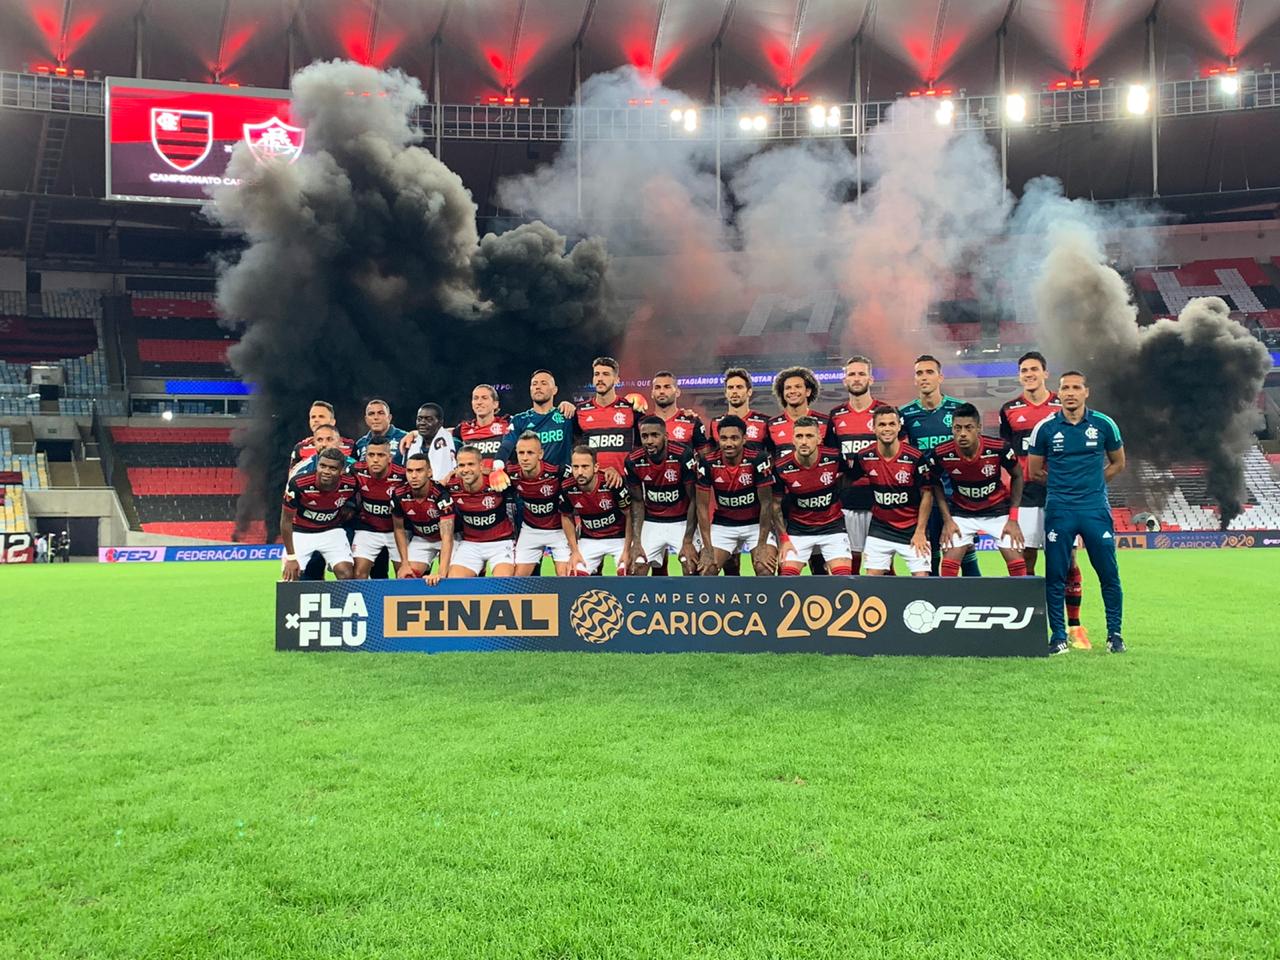 Escalação Flamengo Final Campeonato Carioca 2020